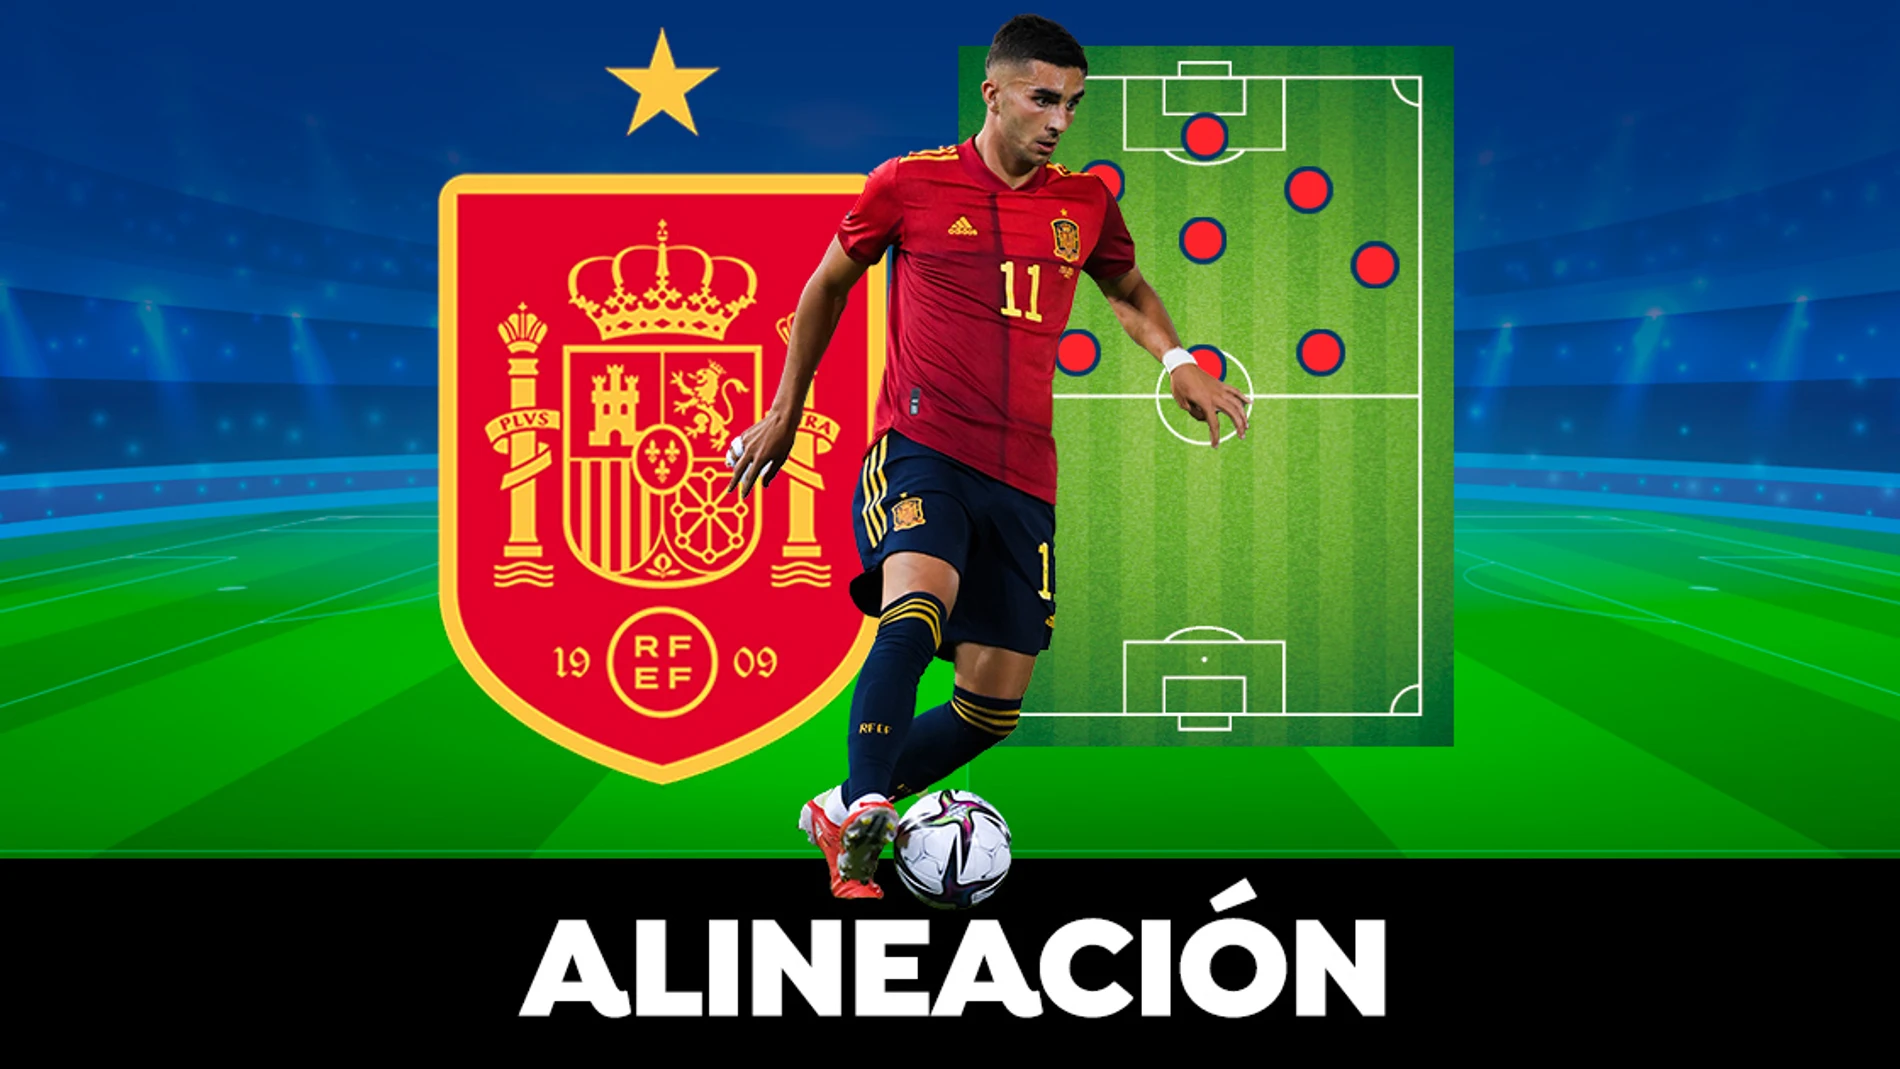 Alineación OFICIAL de España contra Islandia en el partido amistoso hoy